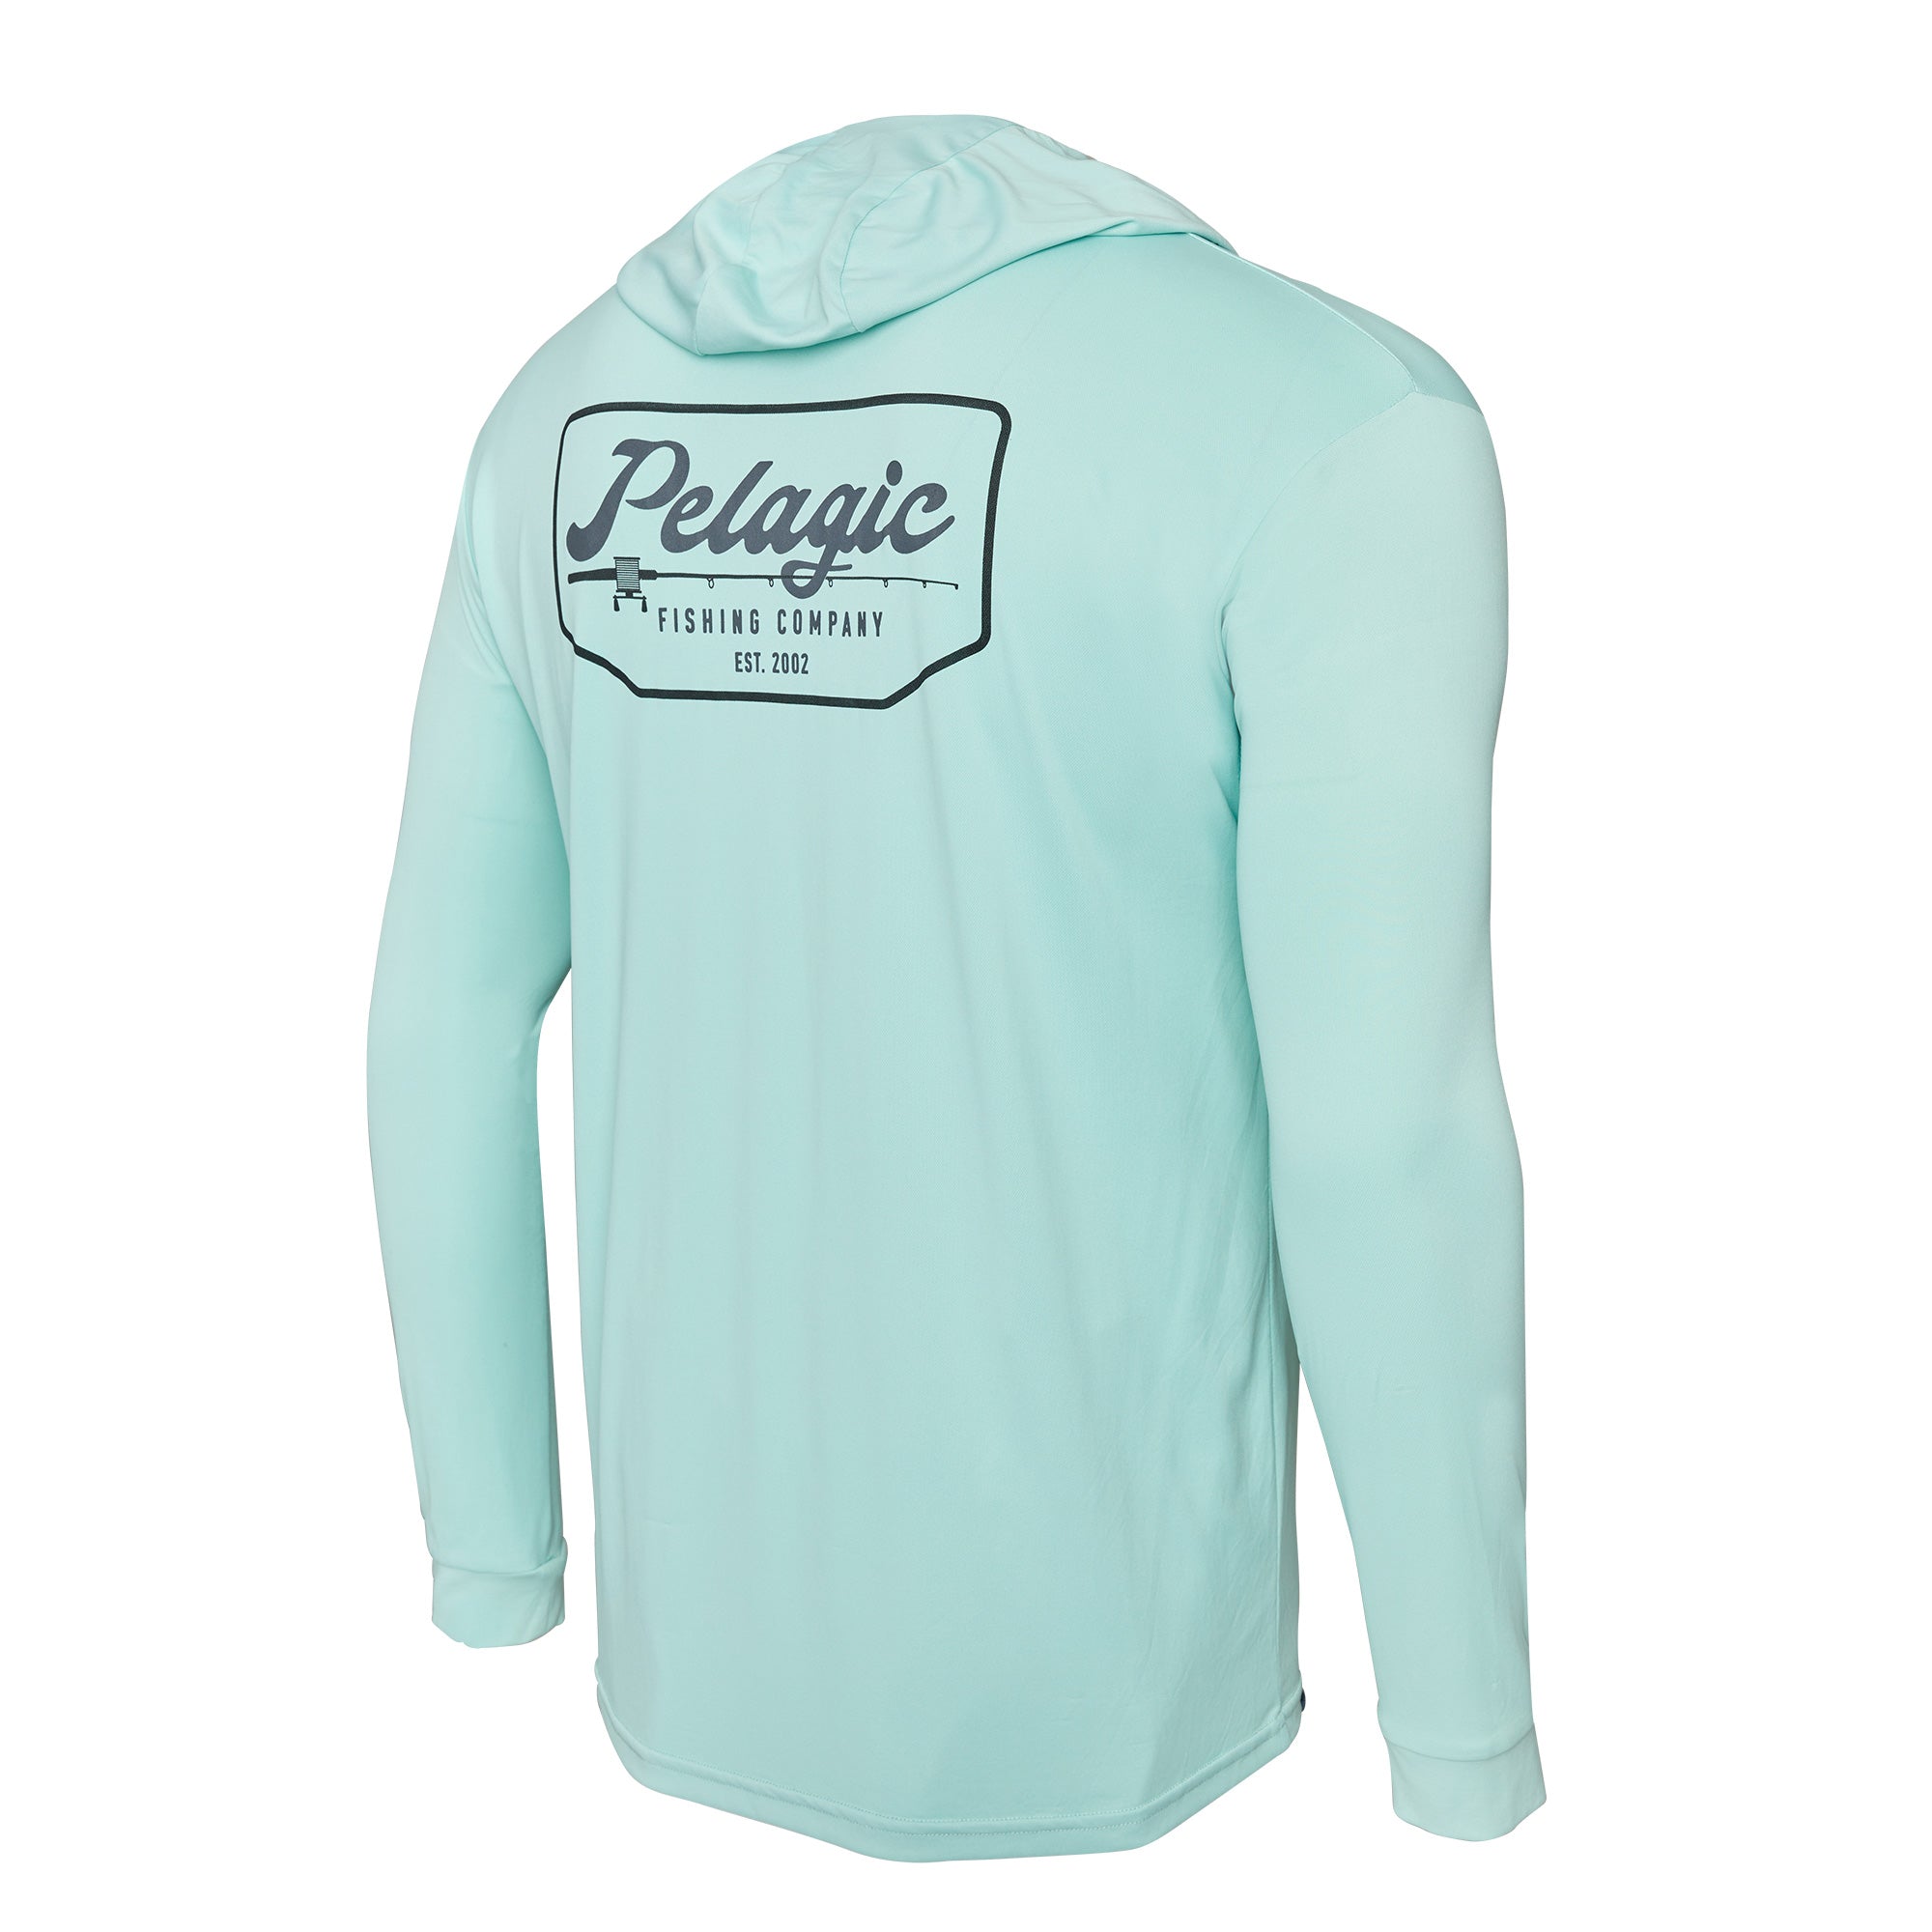 Pelagic Aquatek Sailfish Long Sleeve T-Shirt